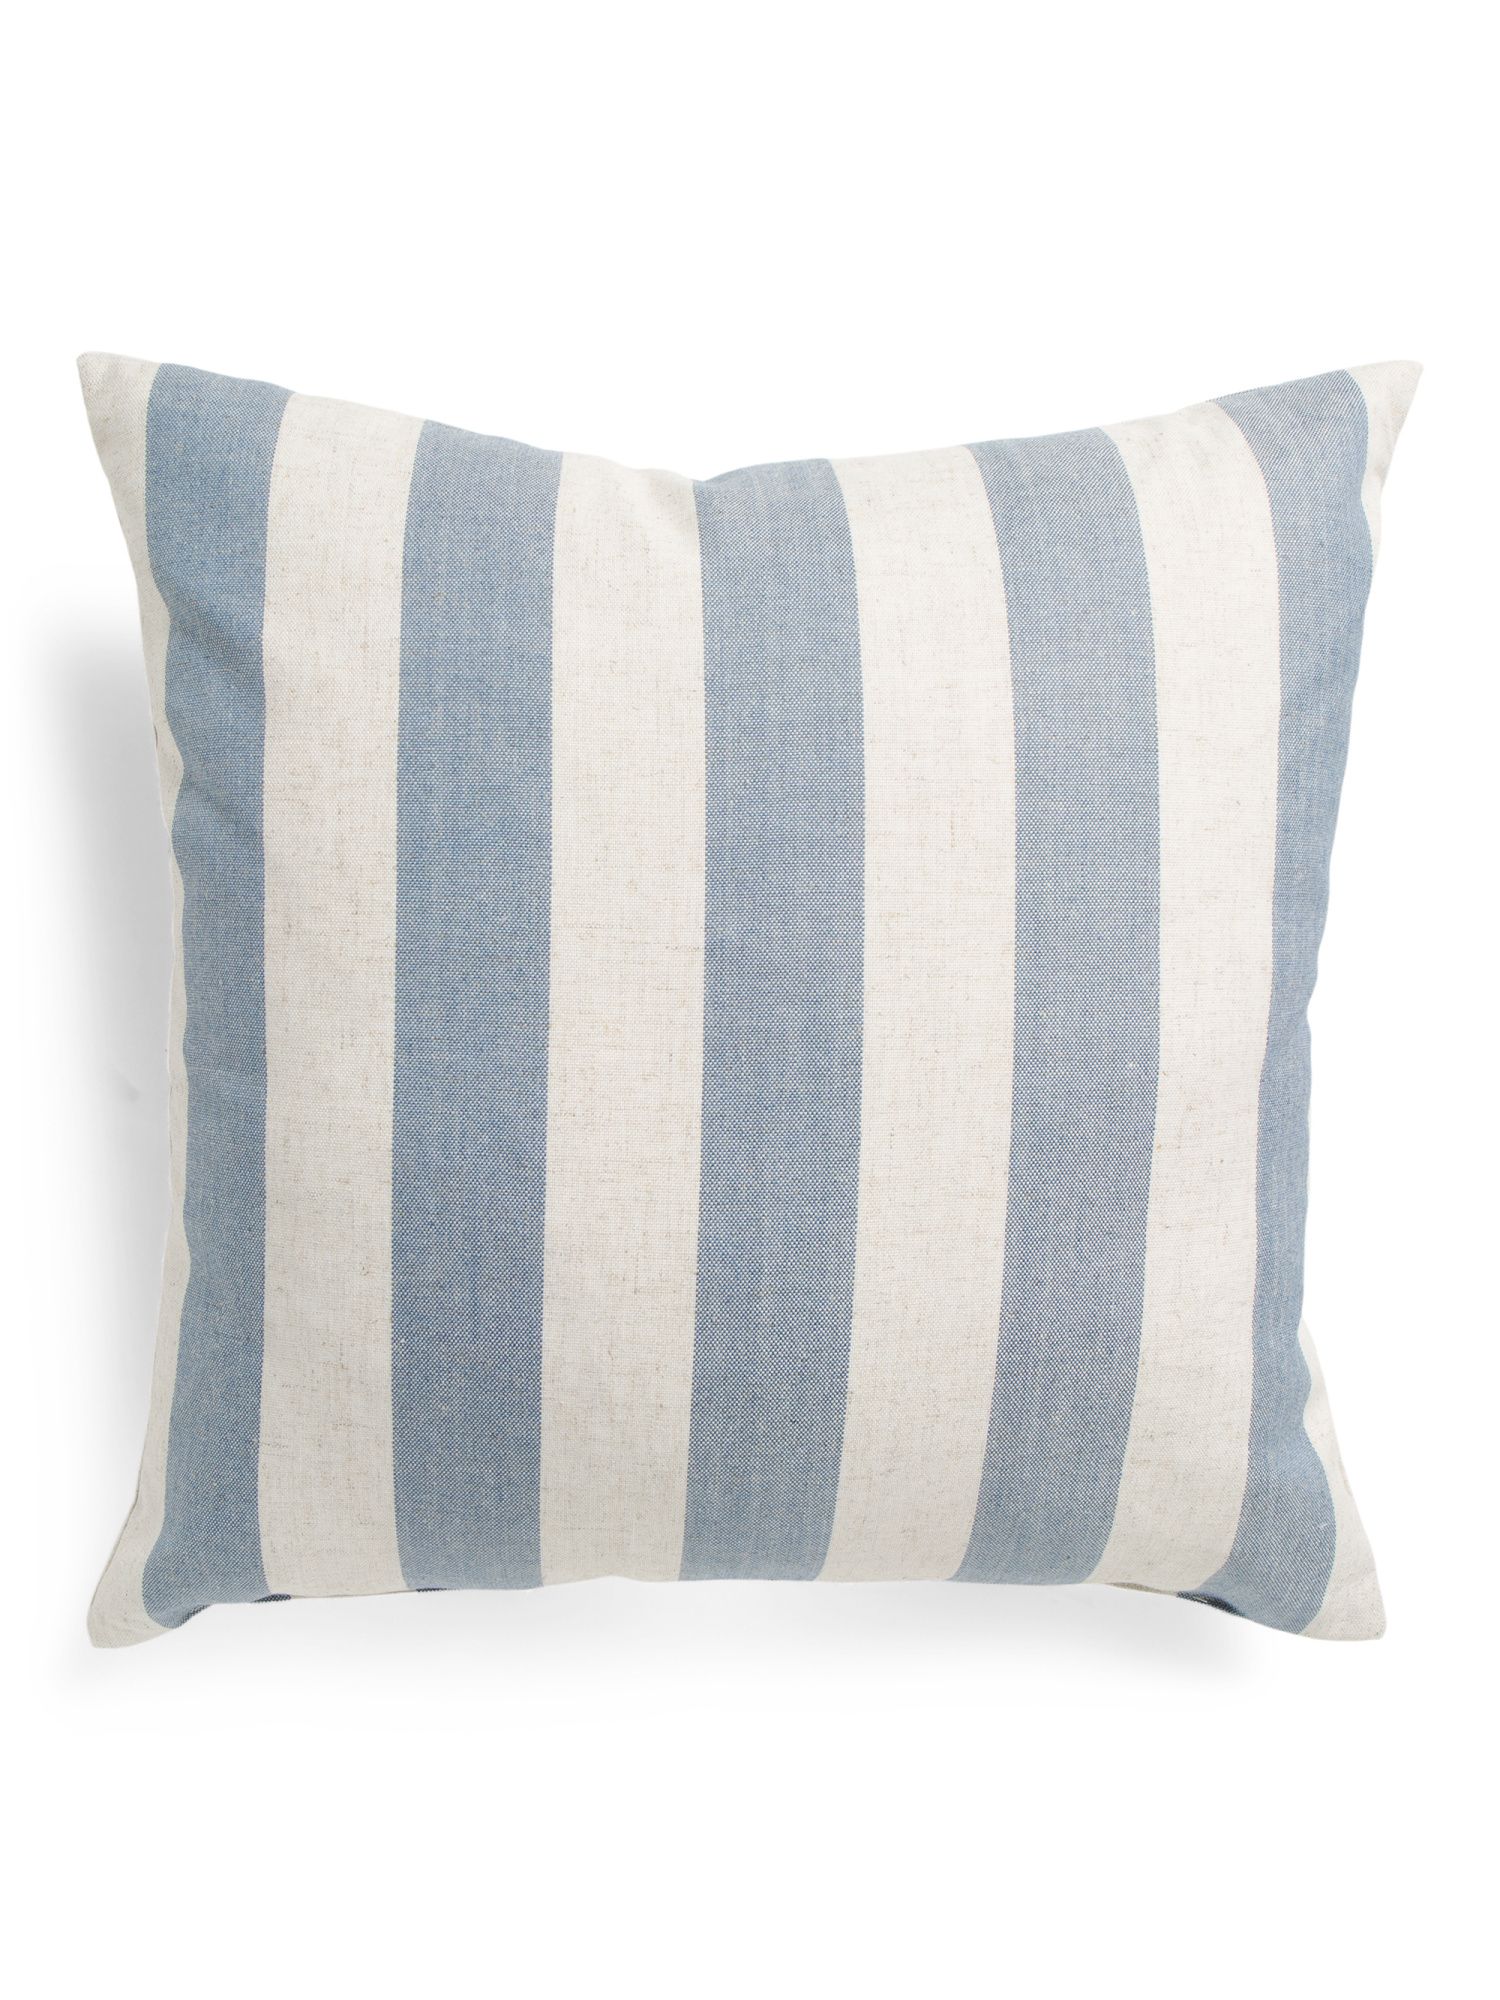 22x22 Striped Pillow | TJ Maxx